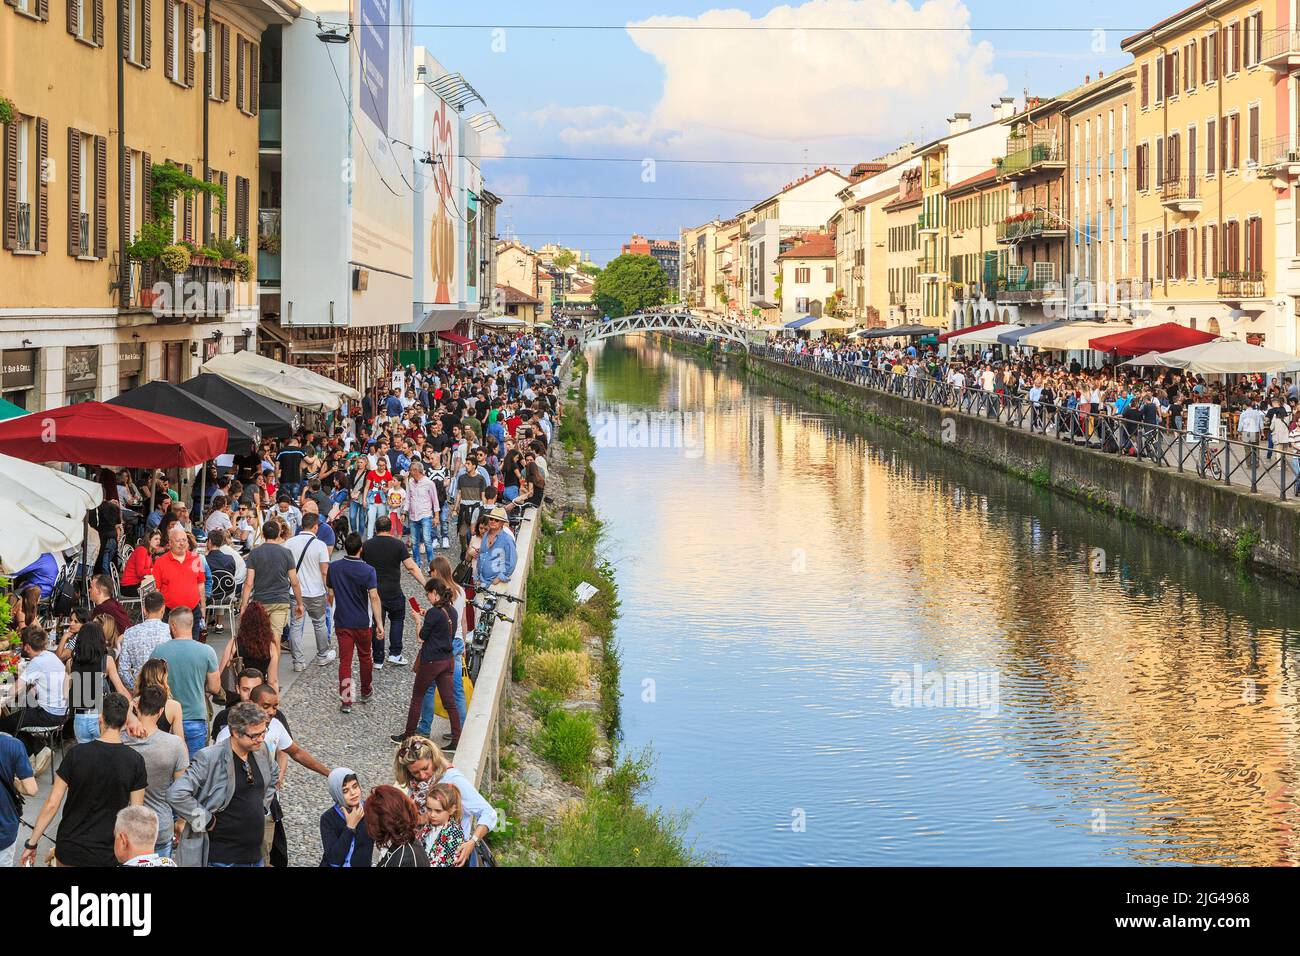 MAILAND, ITALIEN - 12. MAI 2018: Dies ist der Damm des alten Canale Grande des Navigli-Viertels, des romantischsten und lebendigsten Viertels der Stadt. Stockfoto